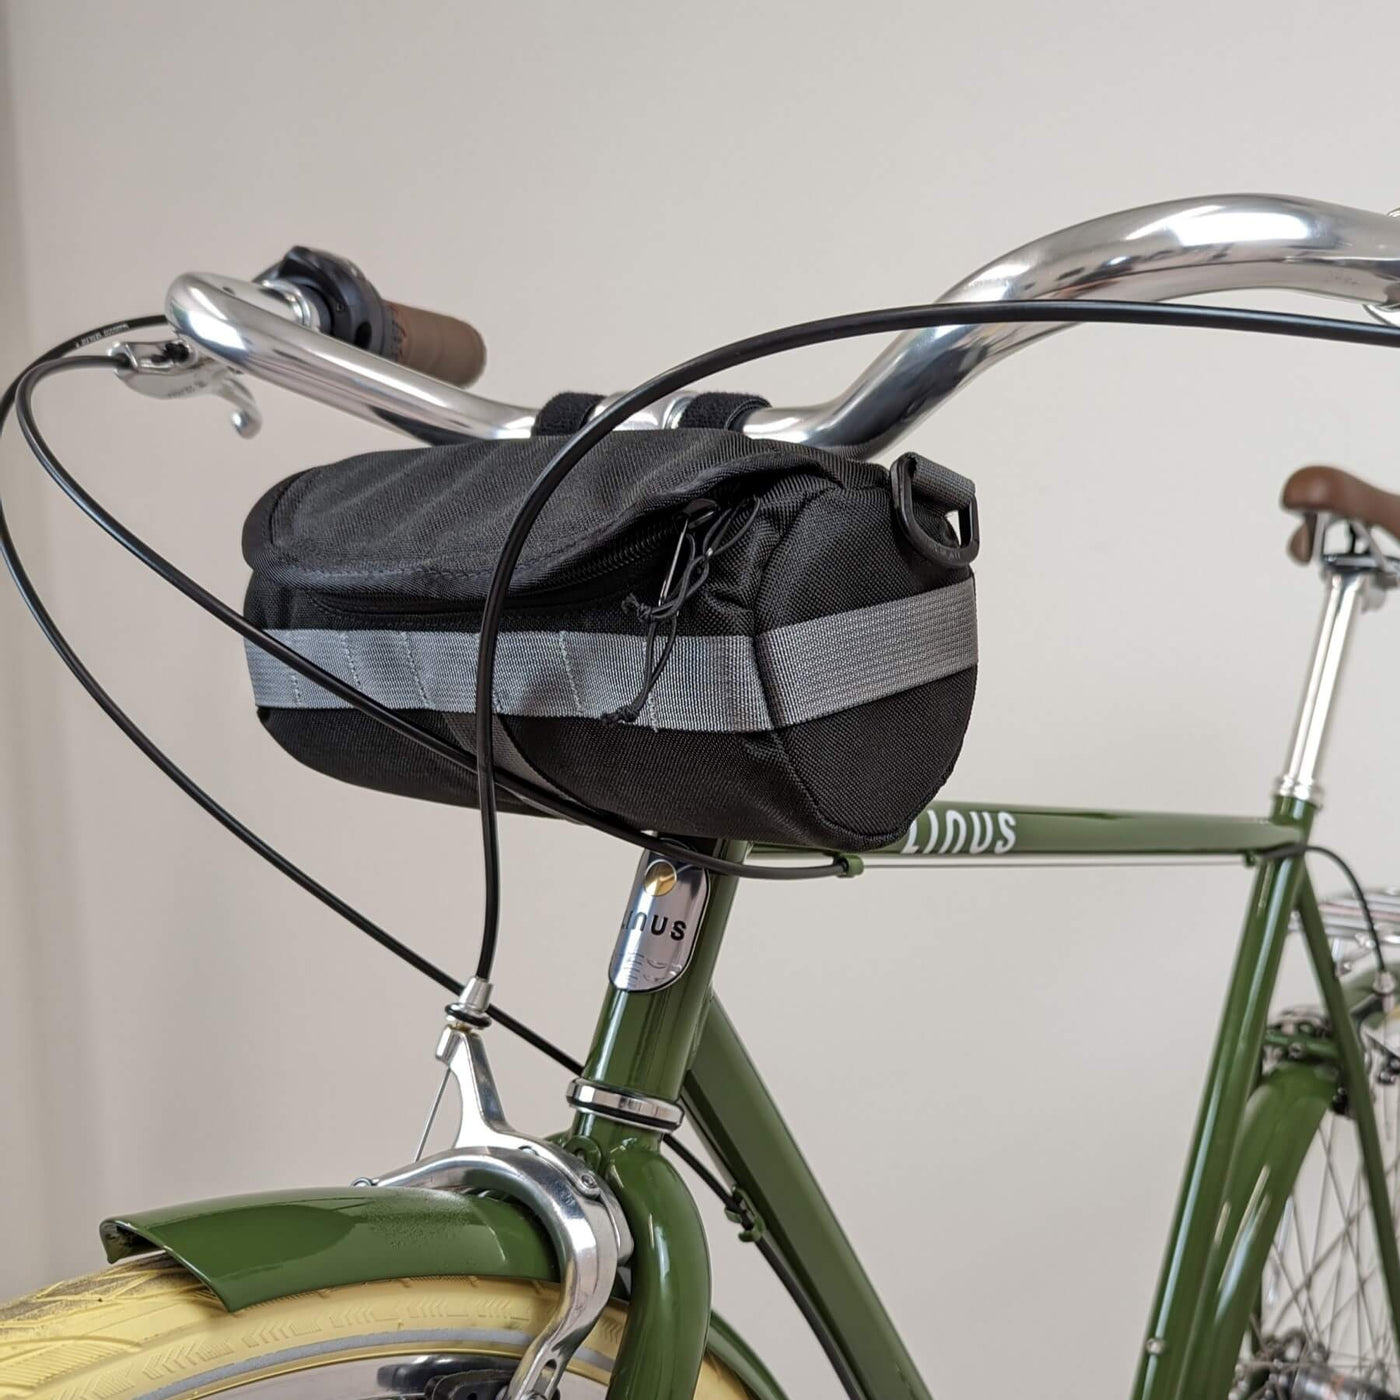 Black handlebar bag on bicycle. 